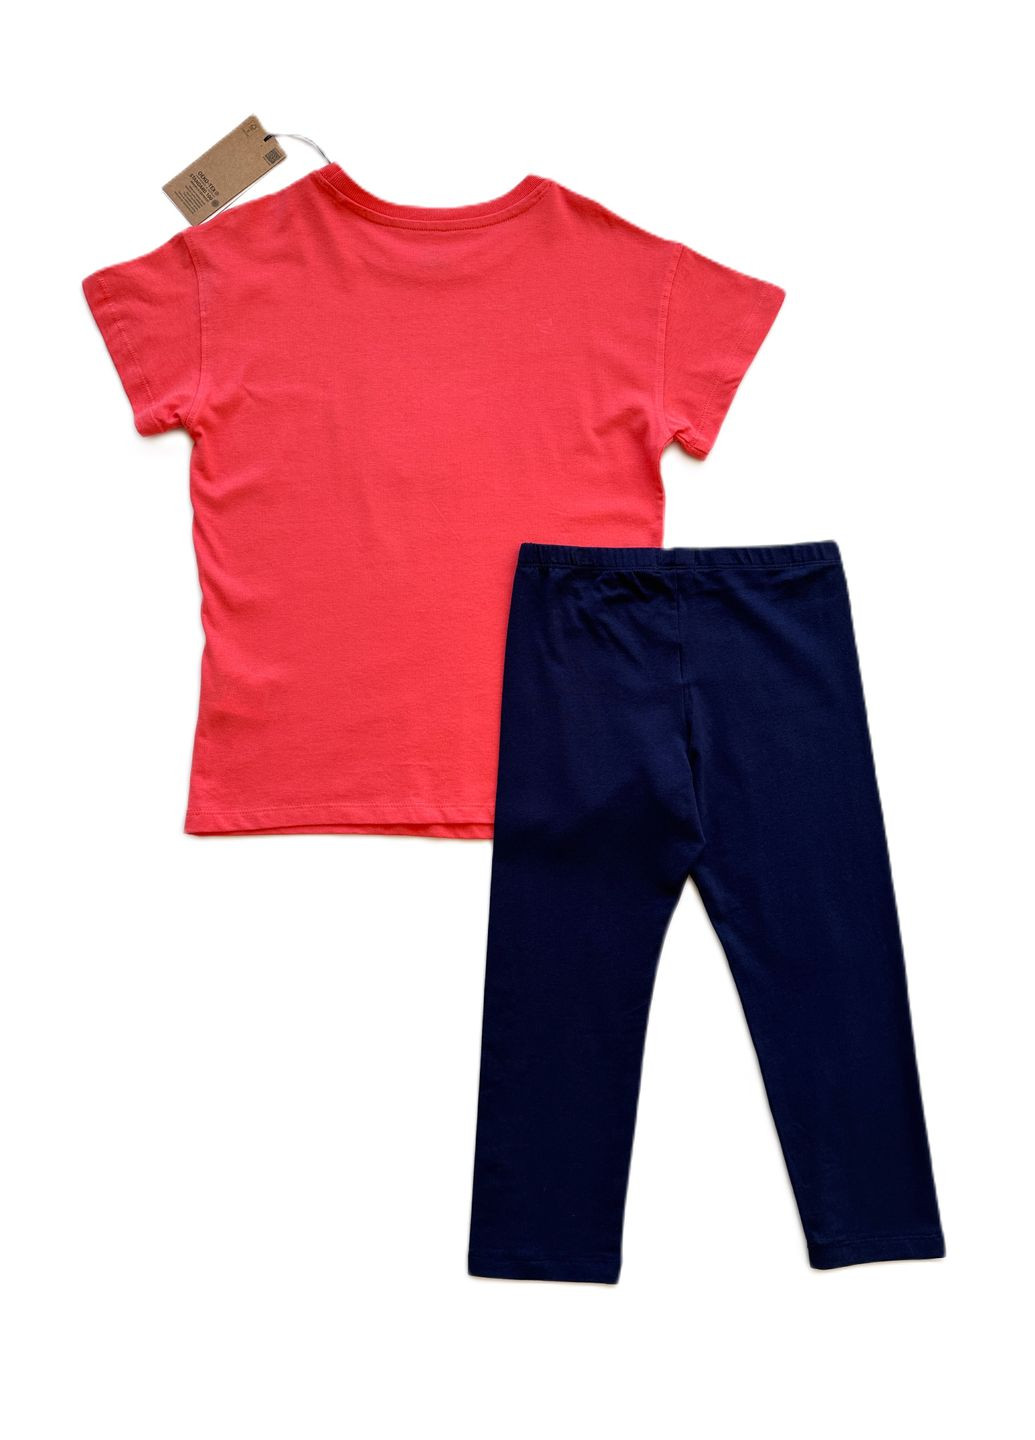 Коралловый летний комплект костюм для девочки футболка коралловая с яблоком + велосипедки темно-синие 2000-46 (140 см) OVS